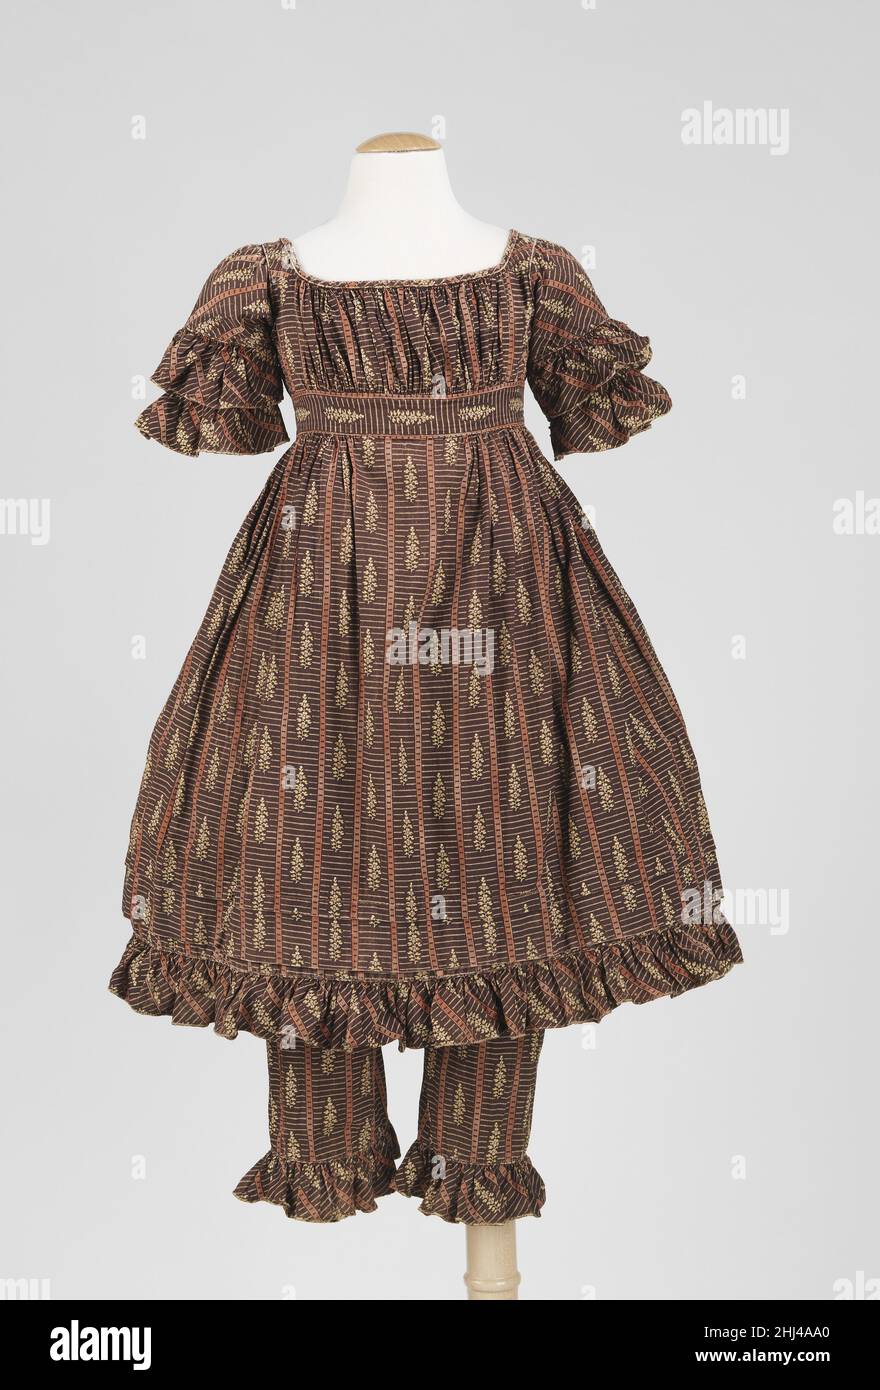 Robe 1820–29 American la robe et les pantalettes que nous avons vues ici  sont faites d'un beau tissu.Les pantalettes sont particulièrement  intéressantes en raison de leur construction, qui comprend des bretelles.Ces  sangles